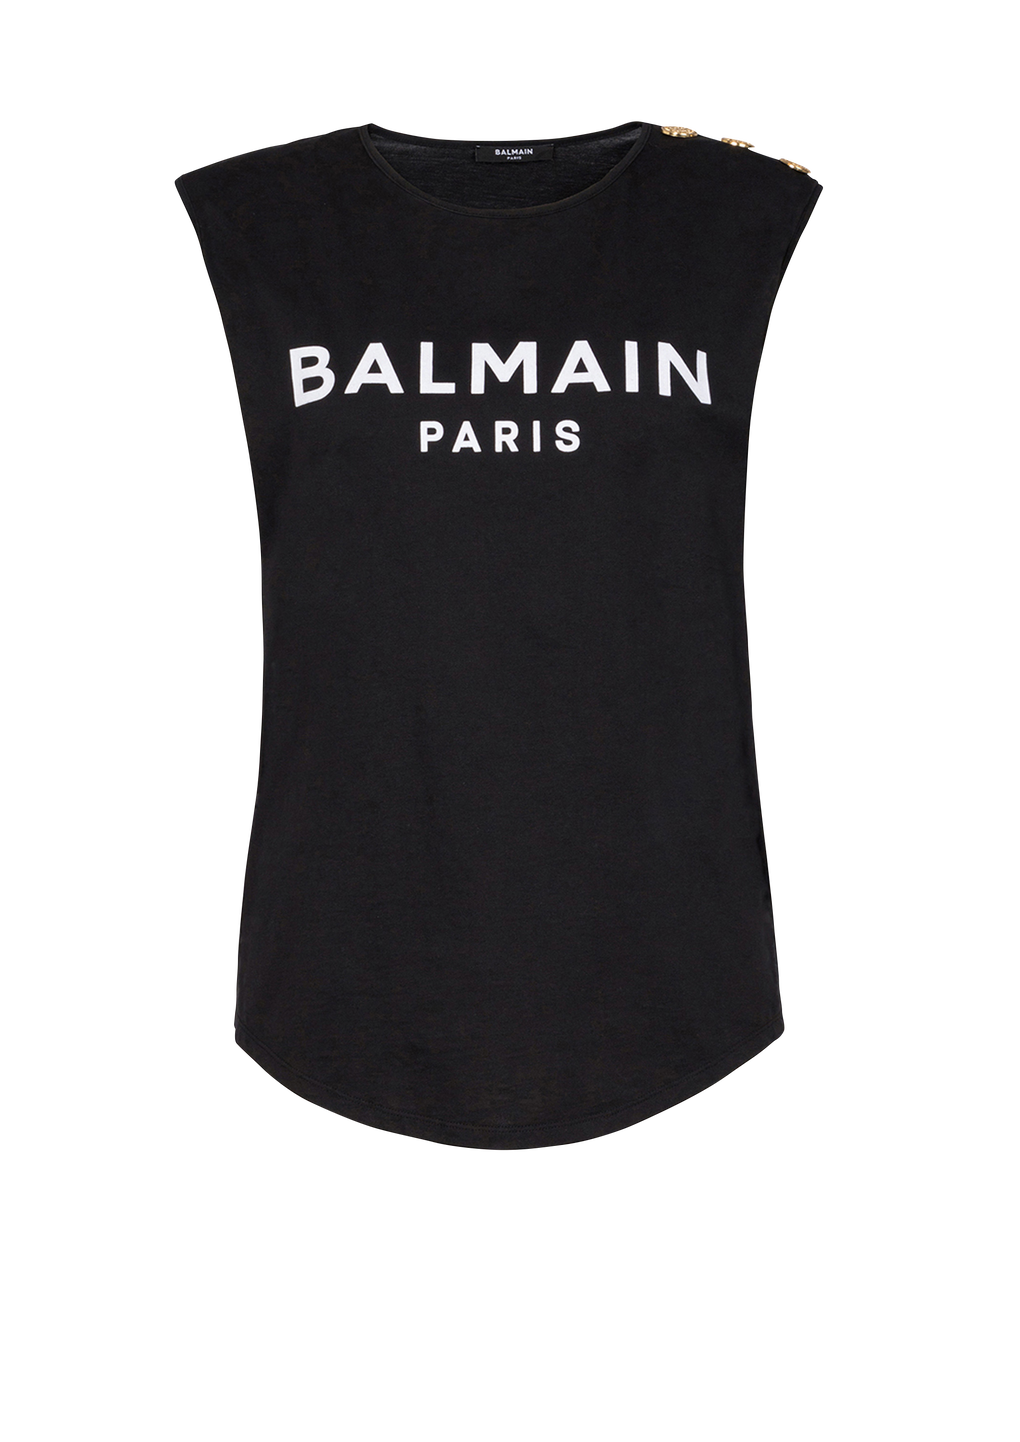 T-shirt in cotone con logo Balmain, nero, hi-res